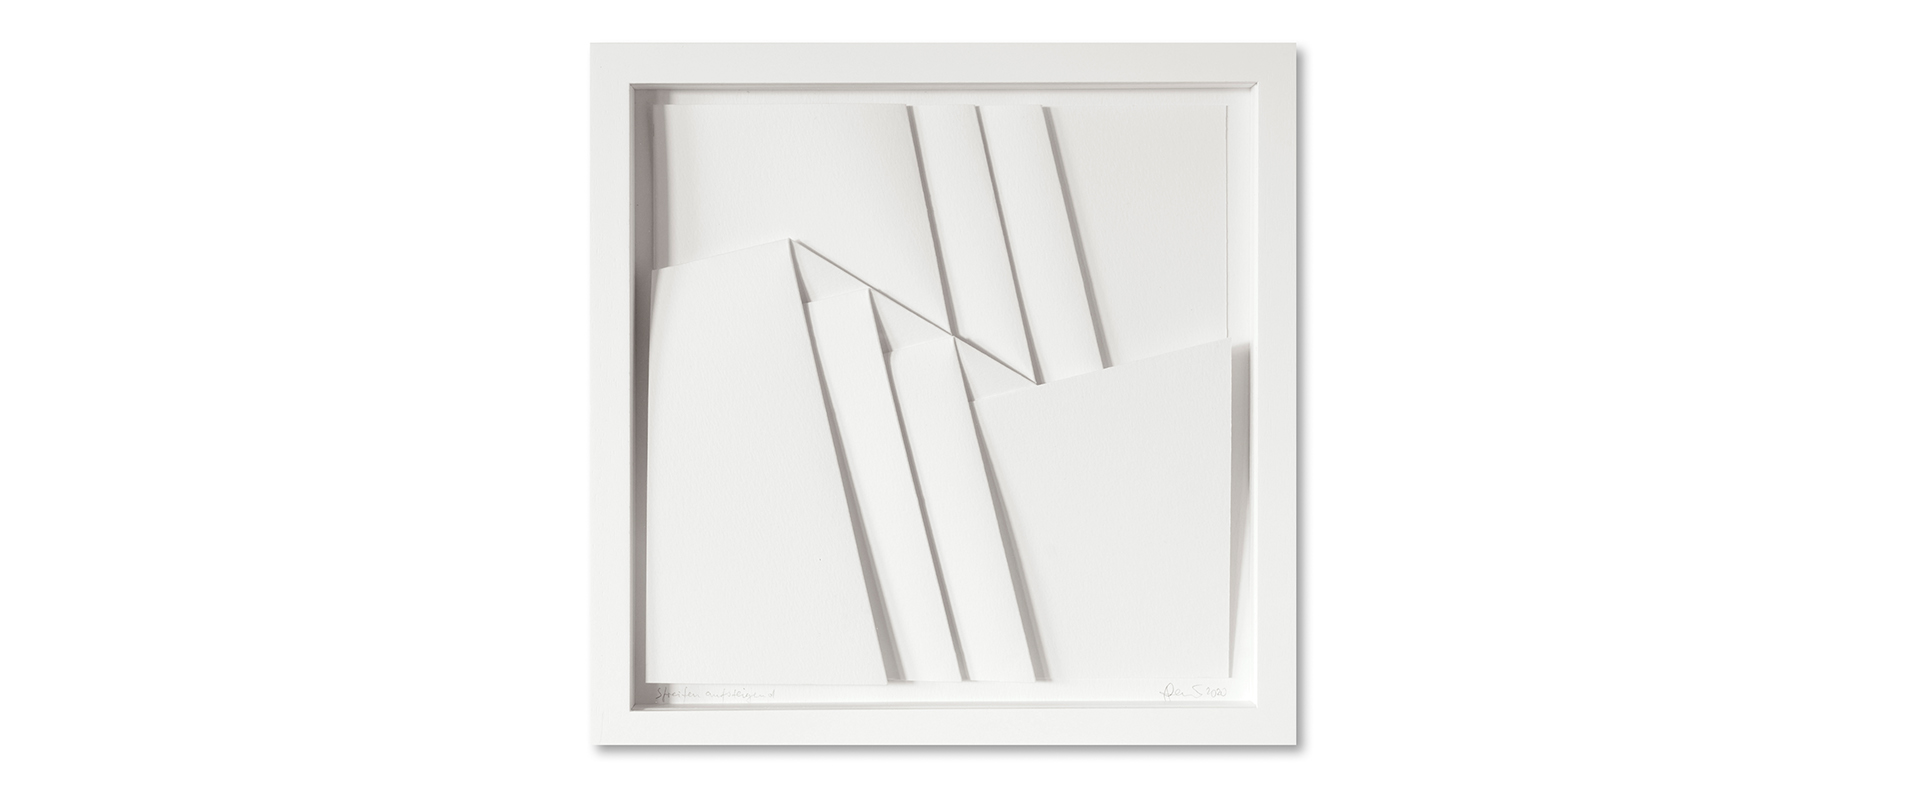 Peter Weber, Streifen aufsteigend – 2020, Canson Aquarellkarton, gefaltet, gerahmt, 30 x 30 cm